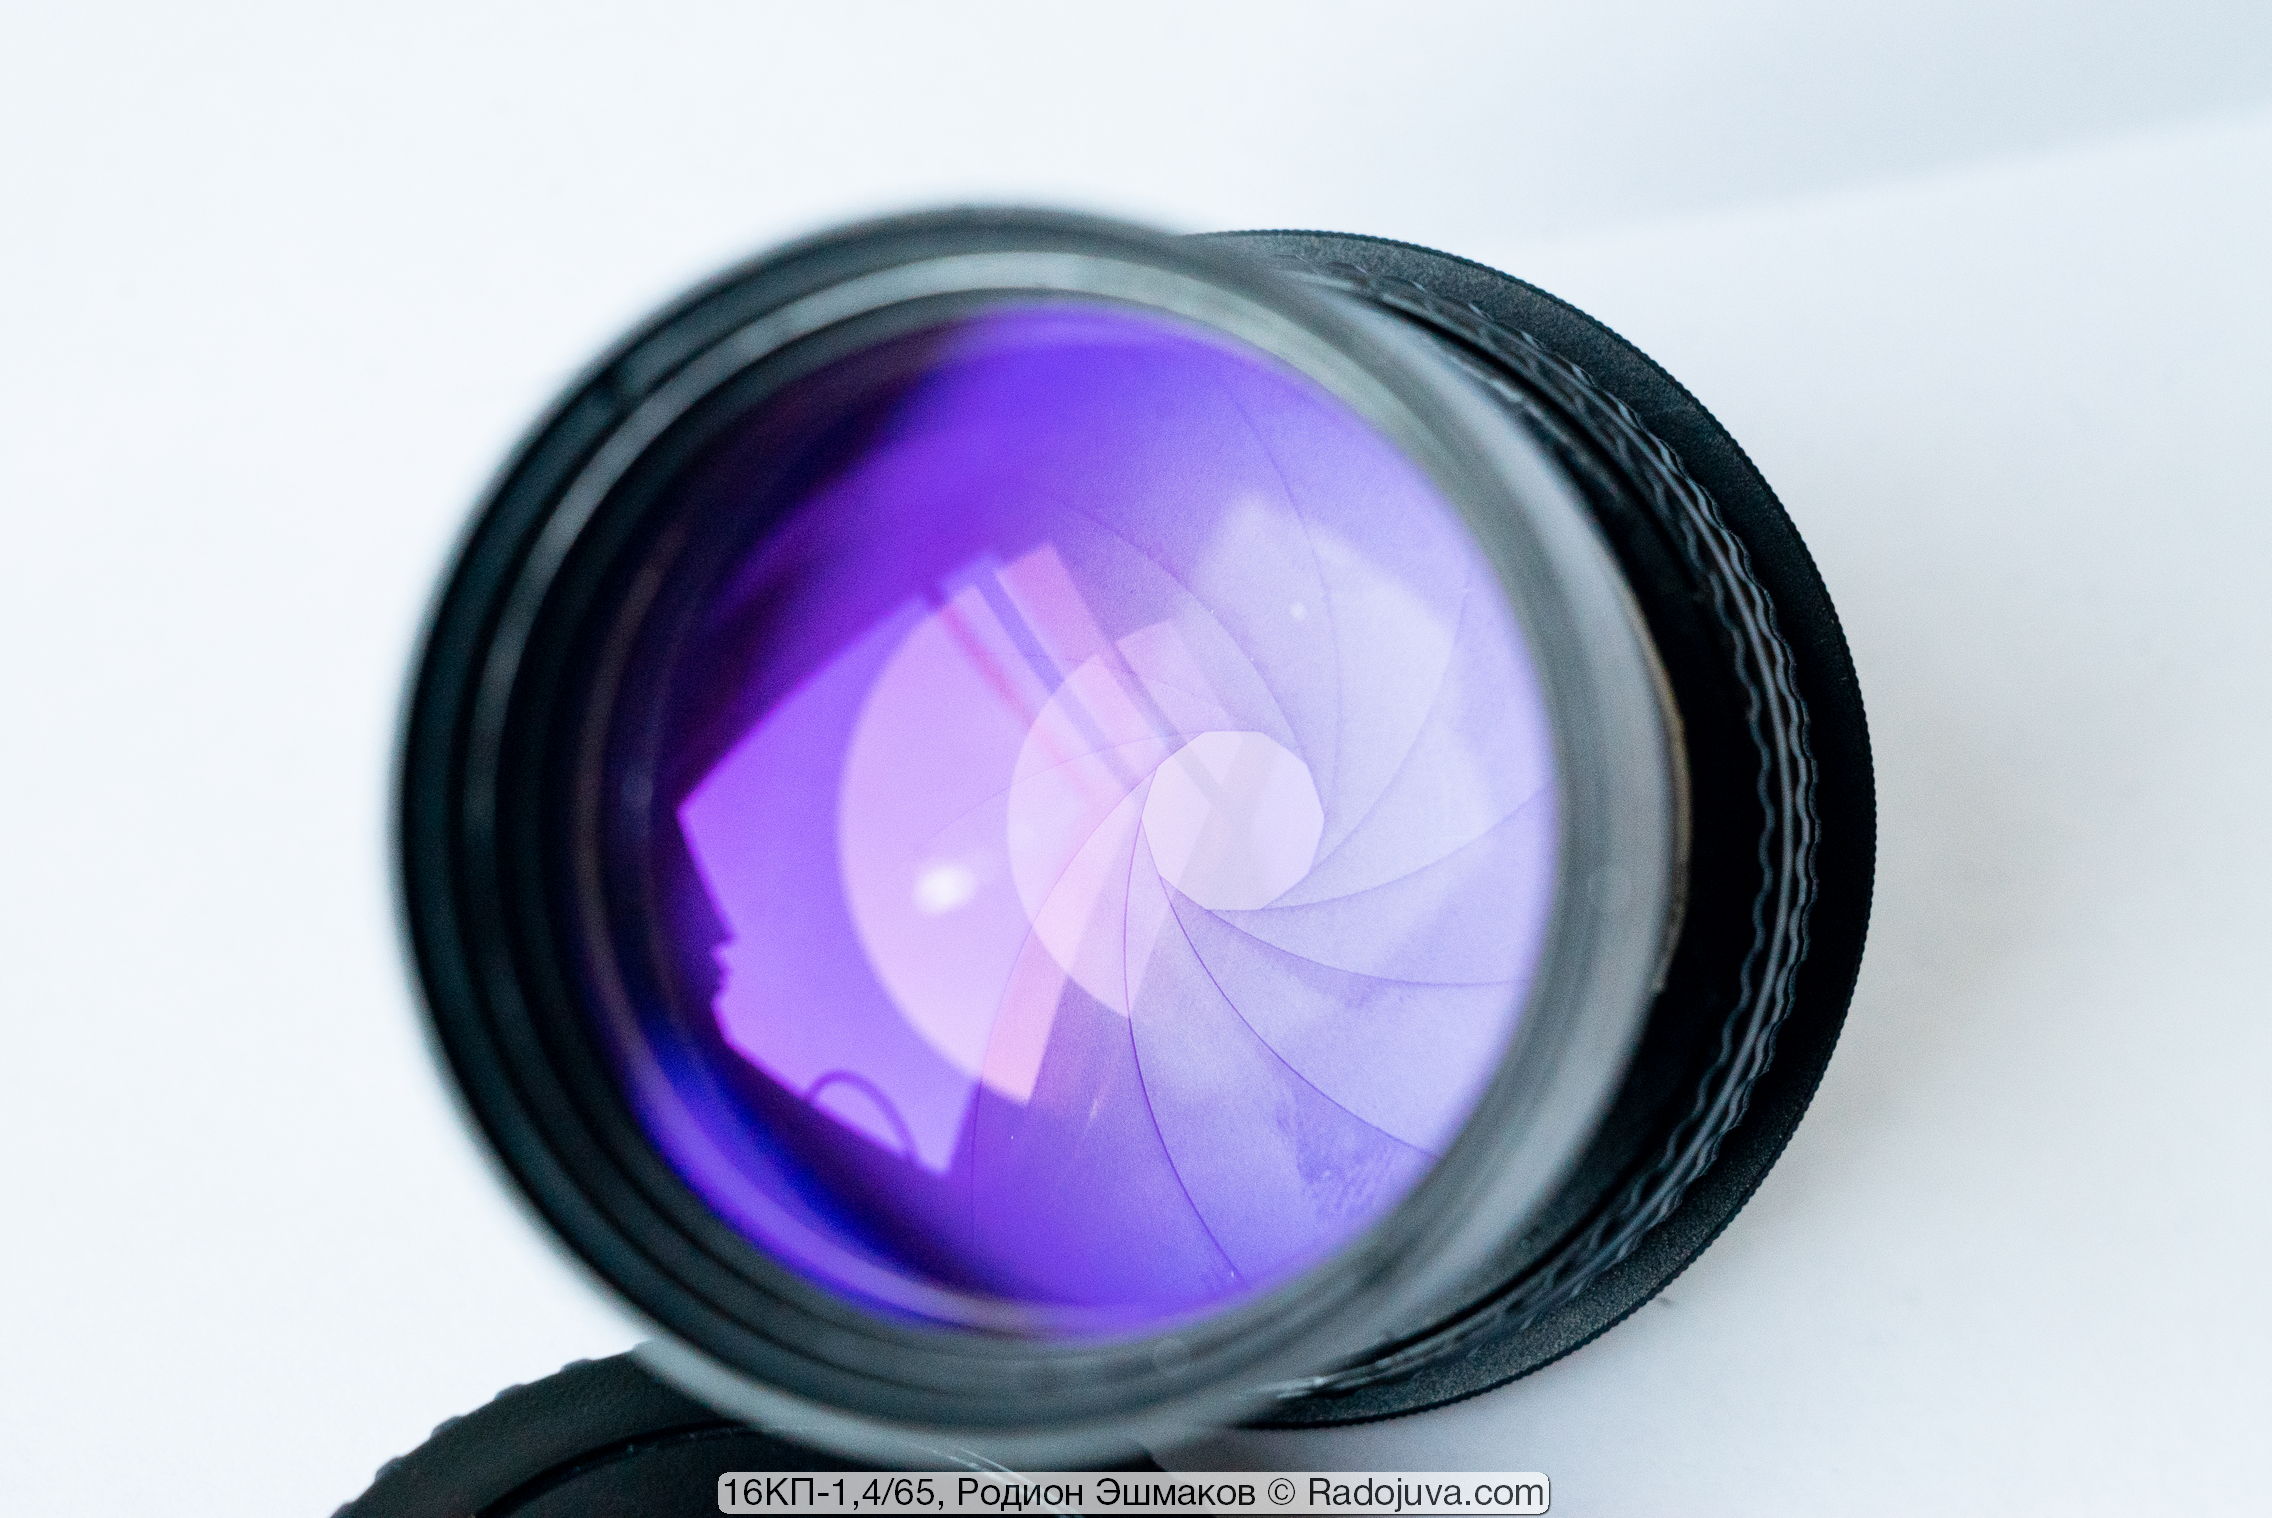 Diafragma de iris circular montado en la lente cuando se adapta.